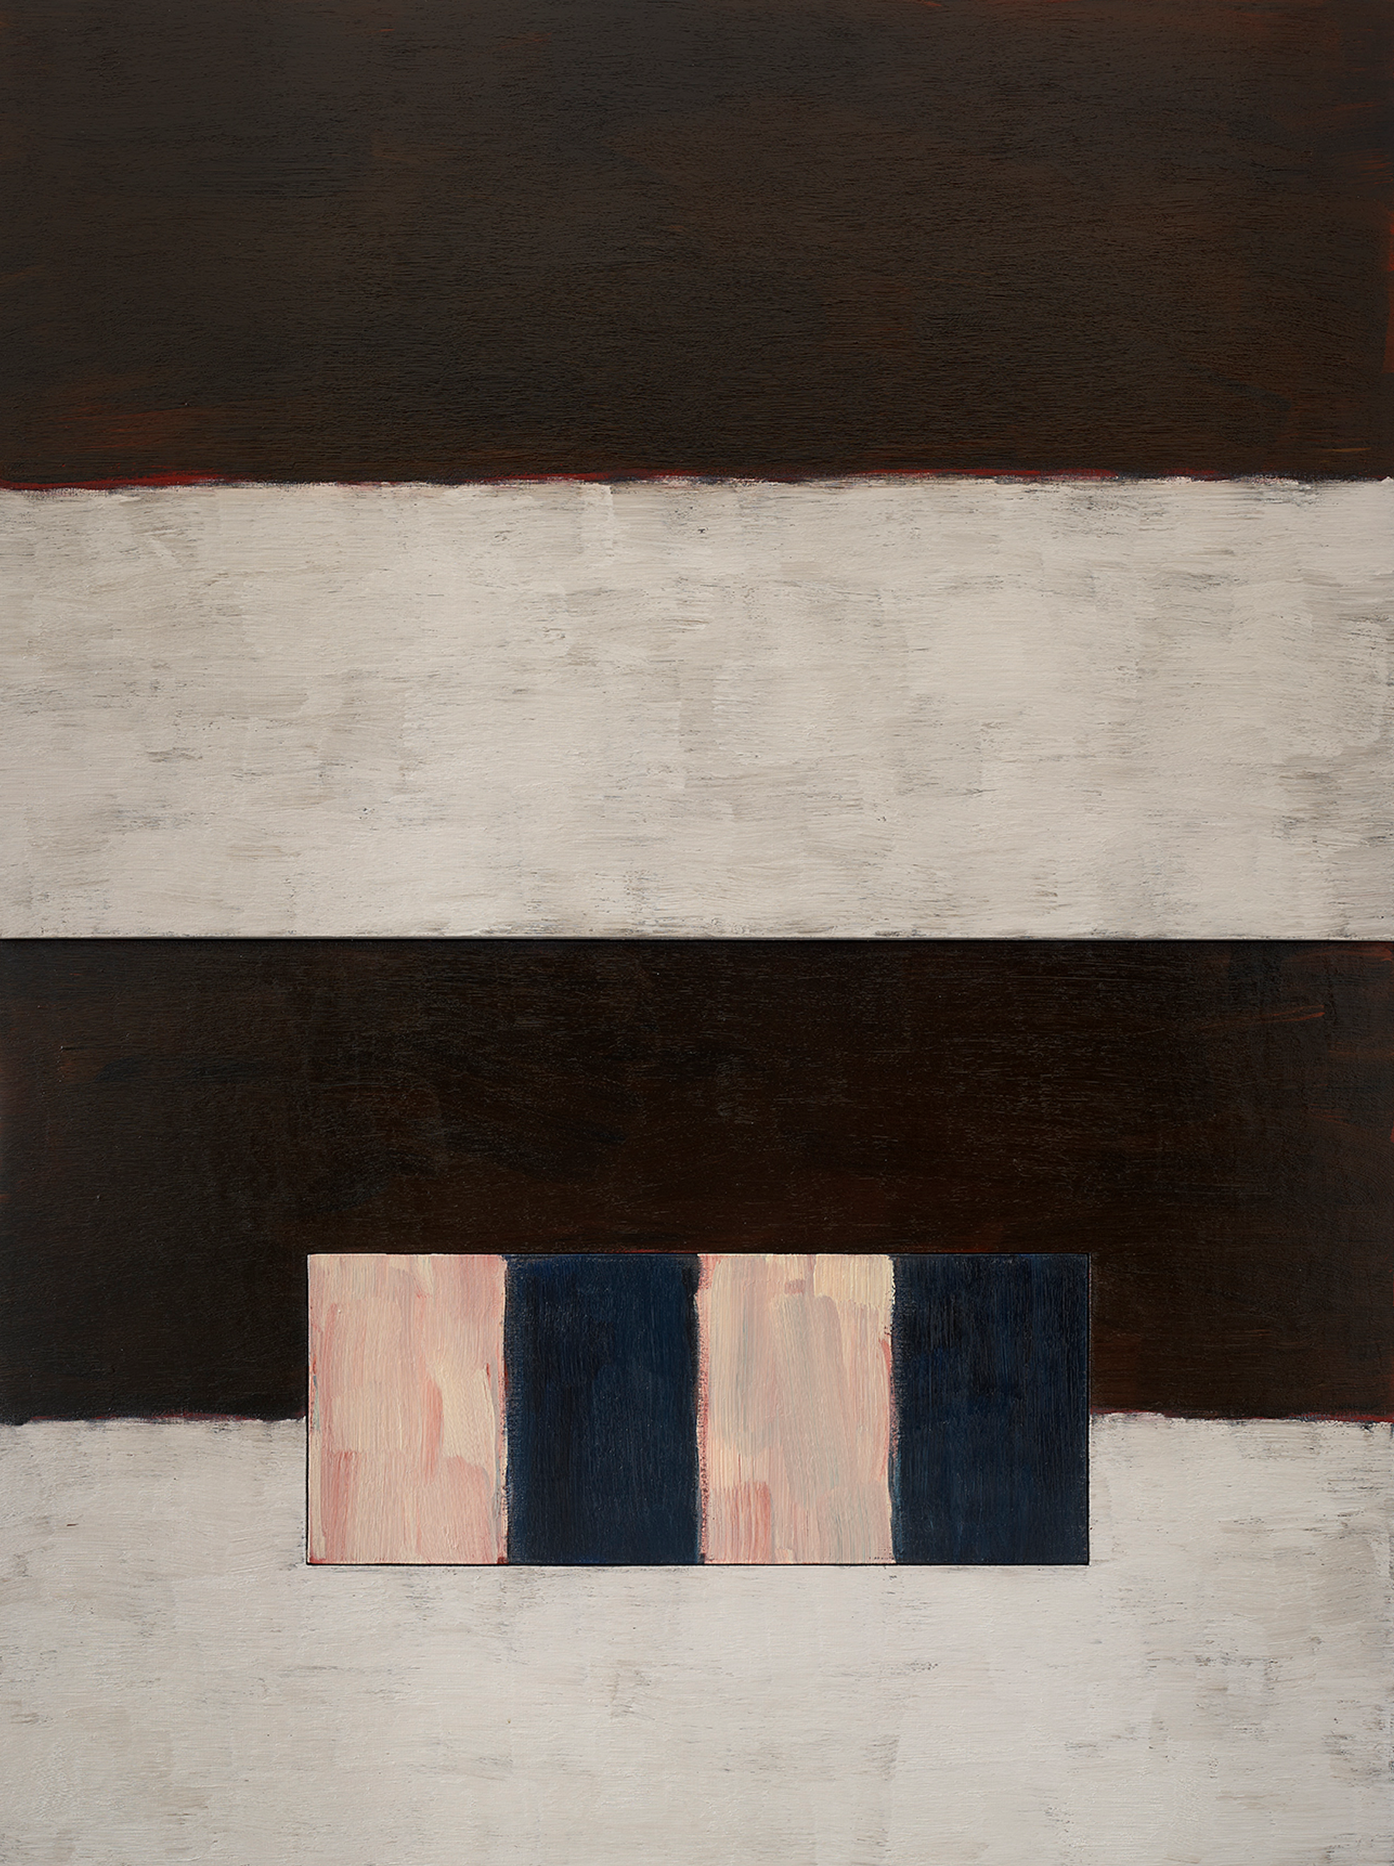 Abbildung von Sean Scullys abstraktem Werk Winter Days, das aus schwarzen und weißen Farbfeldern besteht.